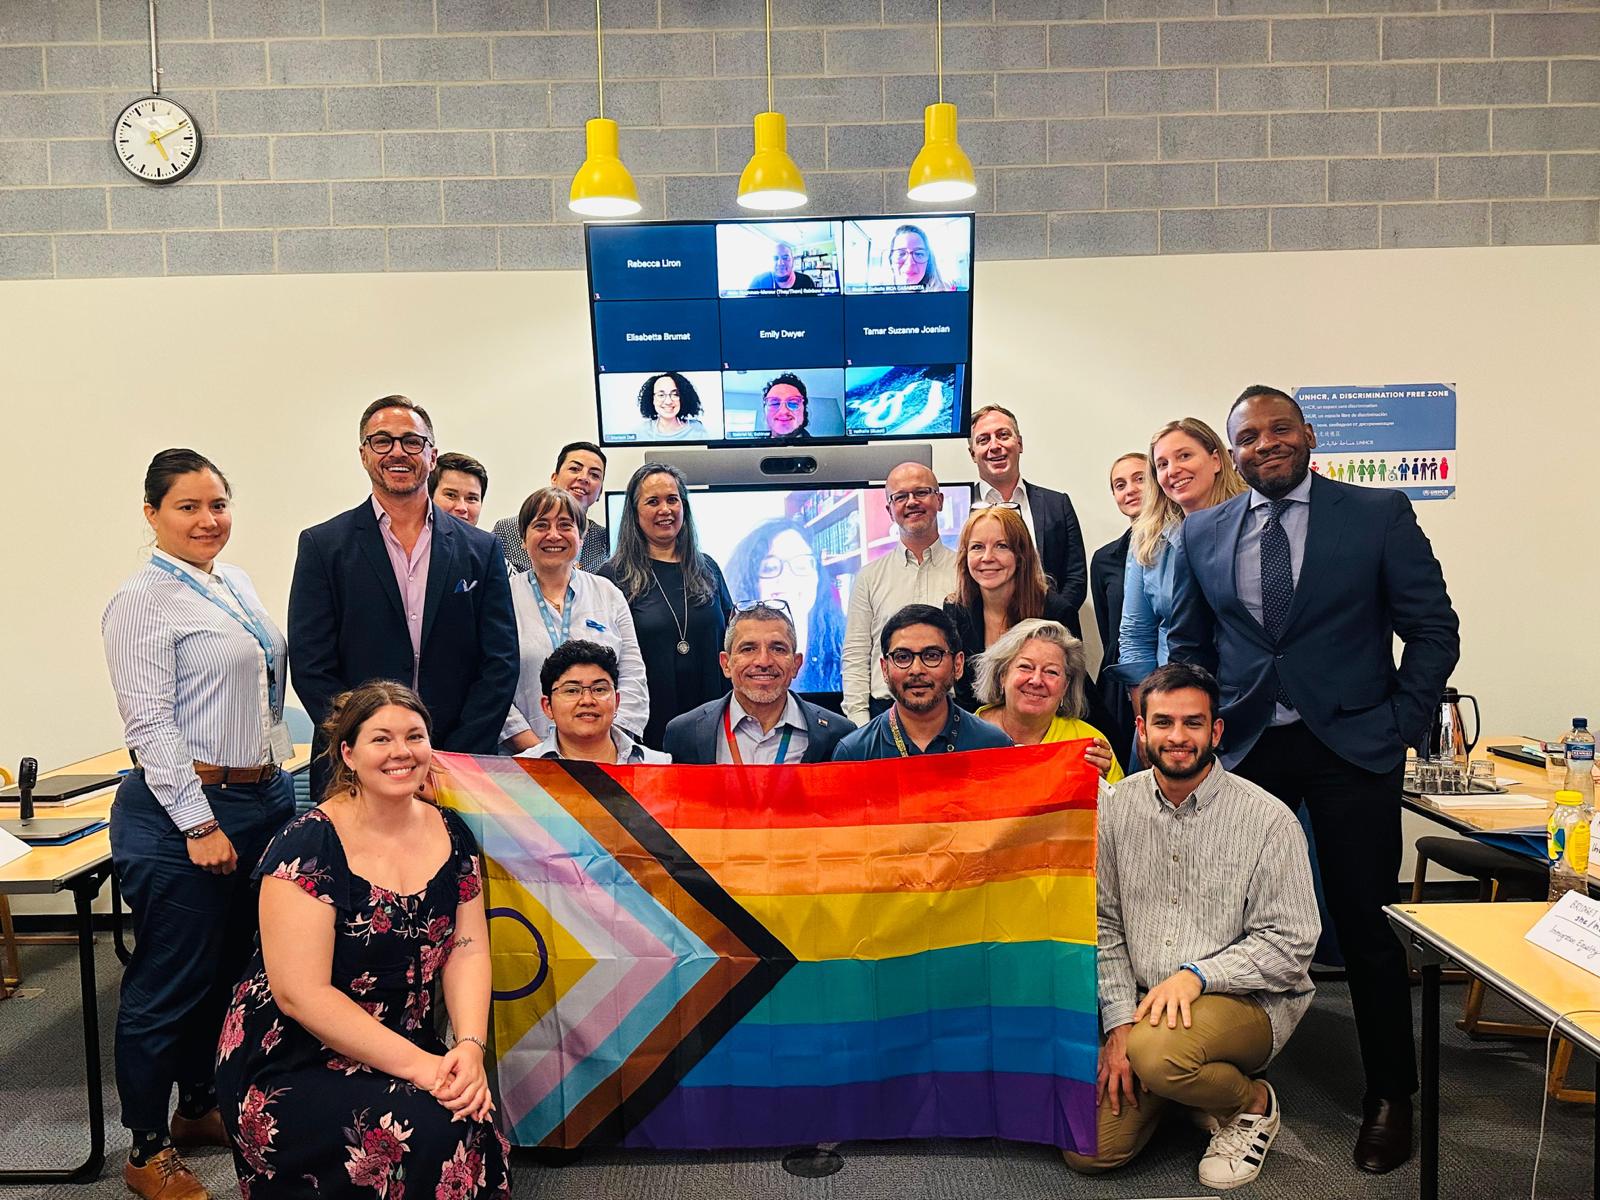 Un grupo de personas en una sala posa para la cámara con una bandera LGBTIQ+